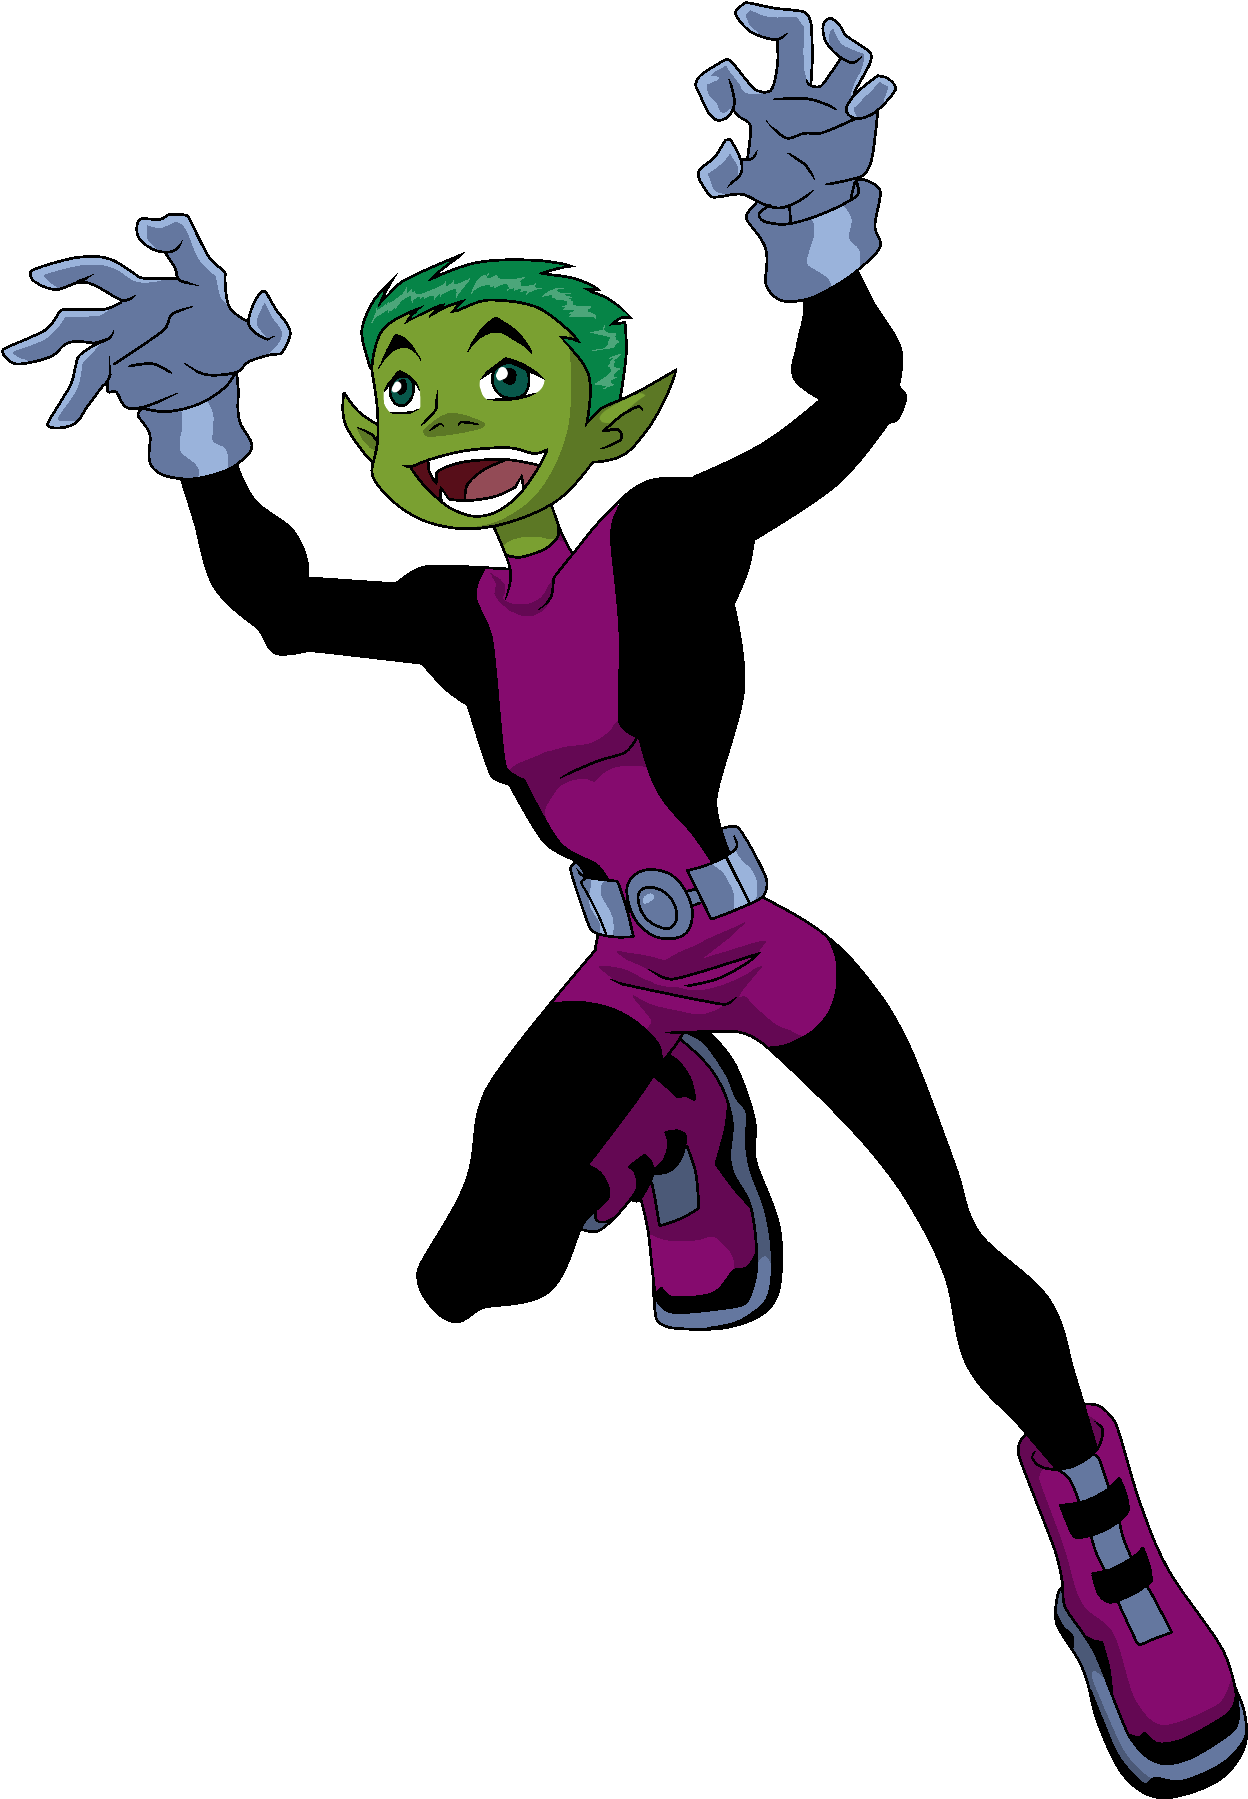 Animated Green Elf Character Joyful Pose PNG image